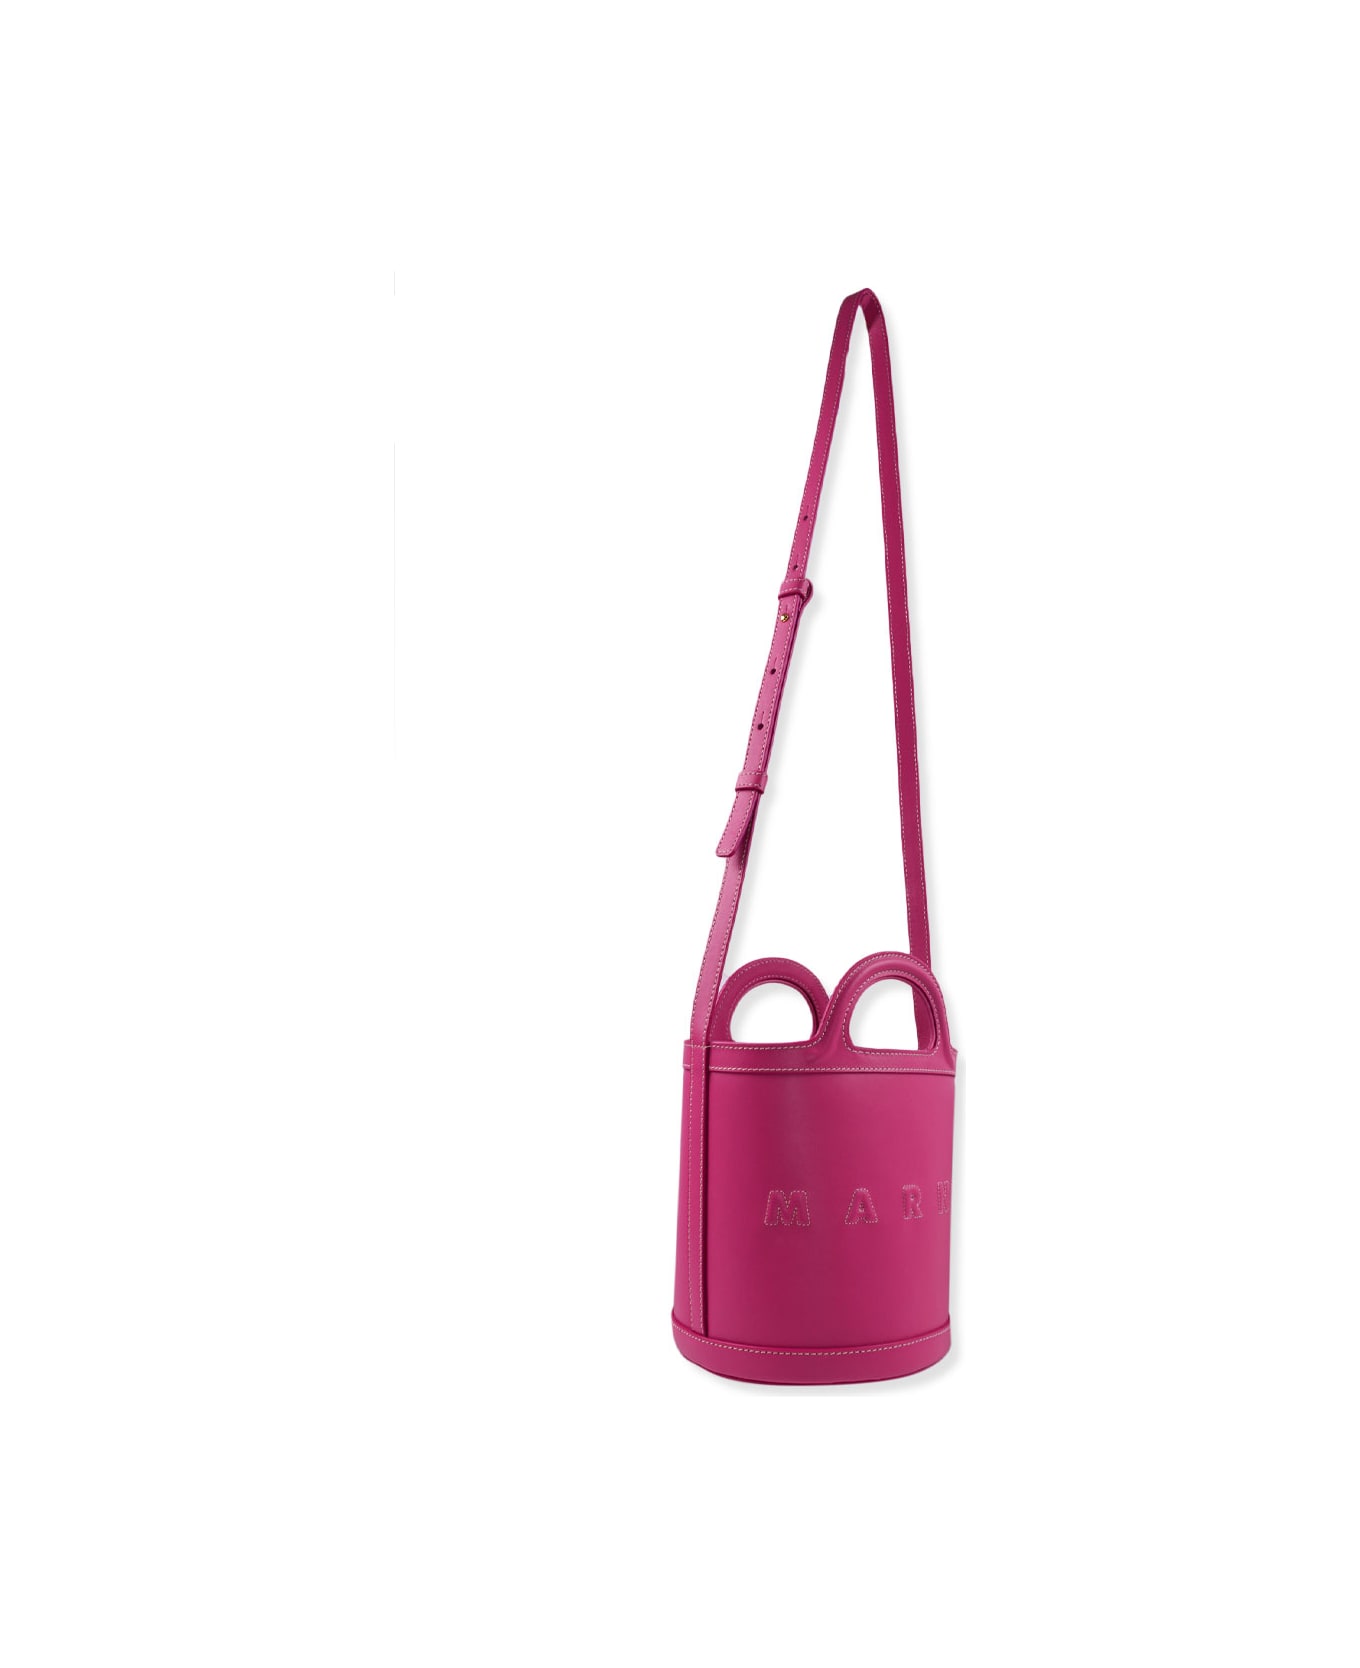 Marni Handbag - Pink トートバッグ